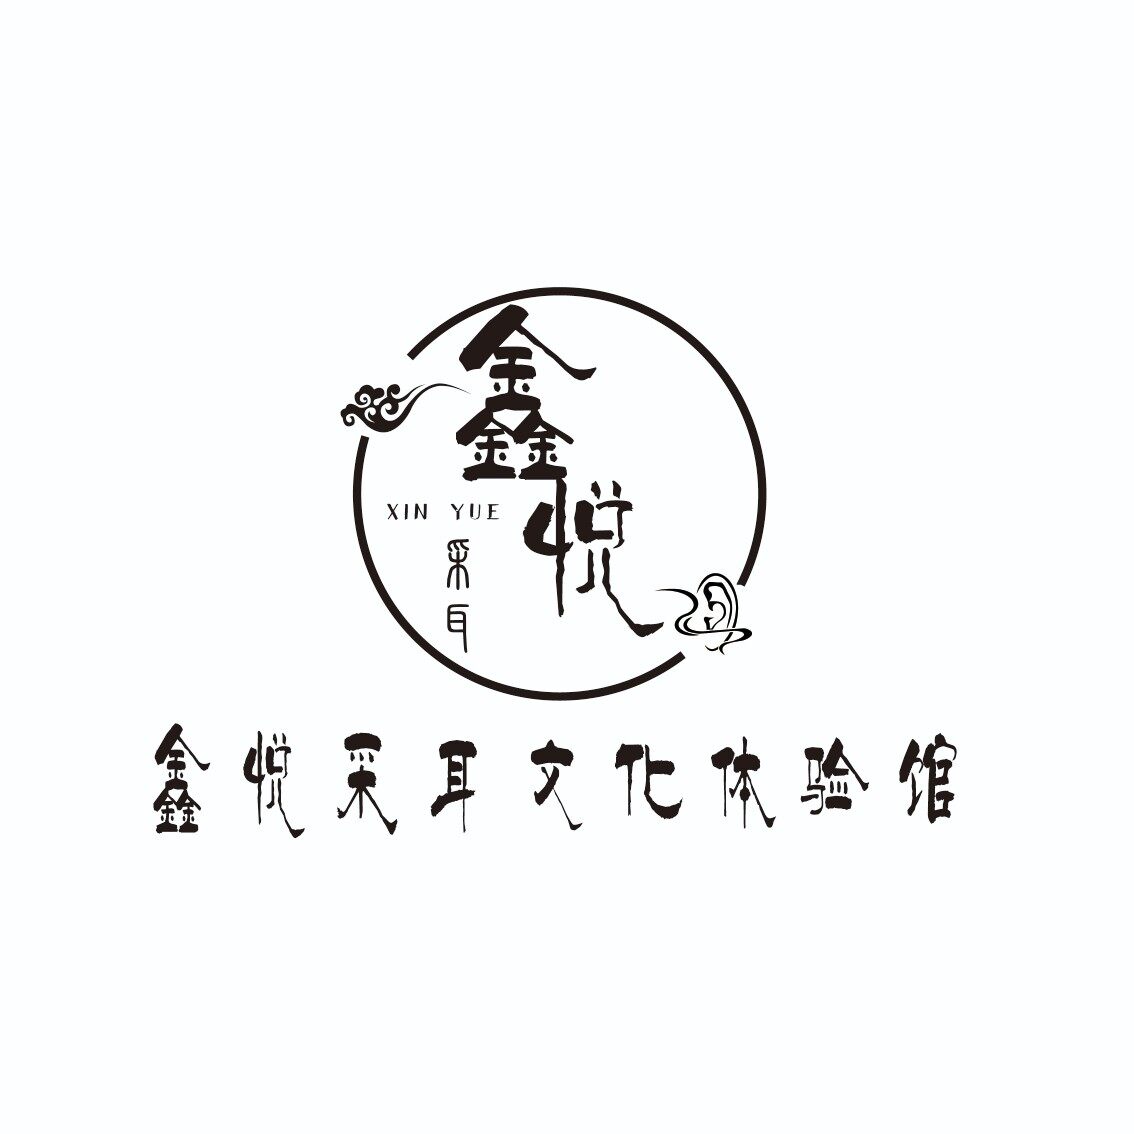 深圳市宝安区鑫悦采耳养生馆logo